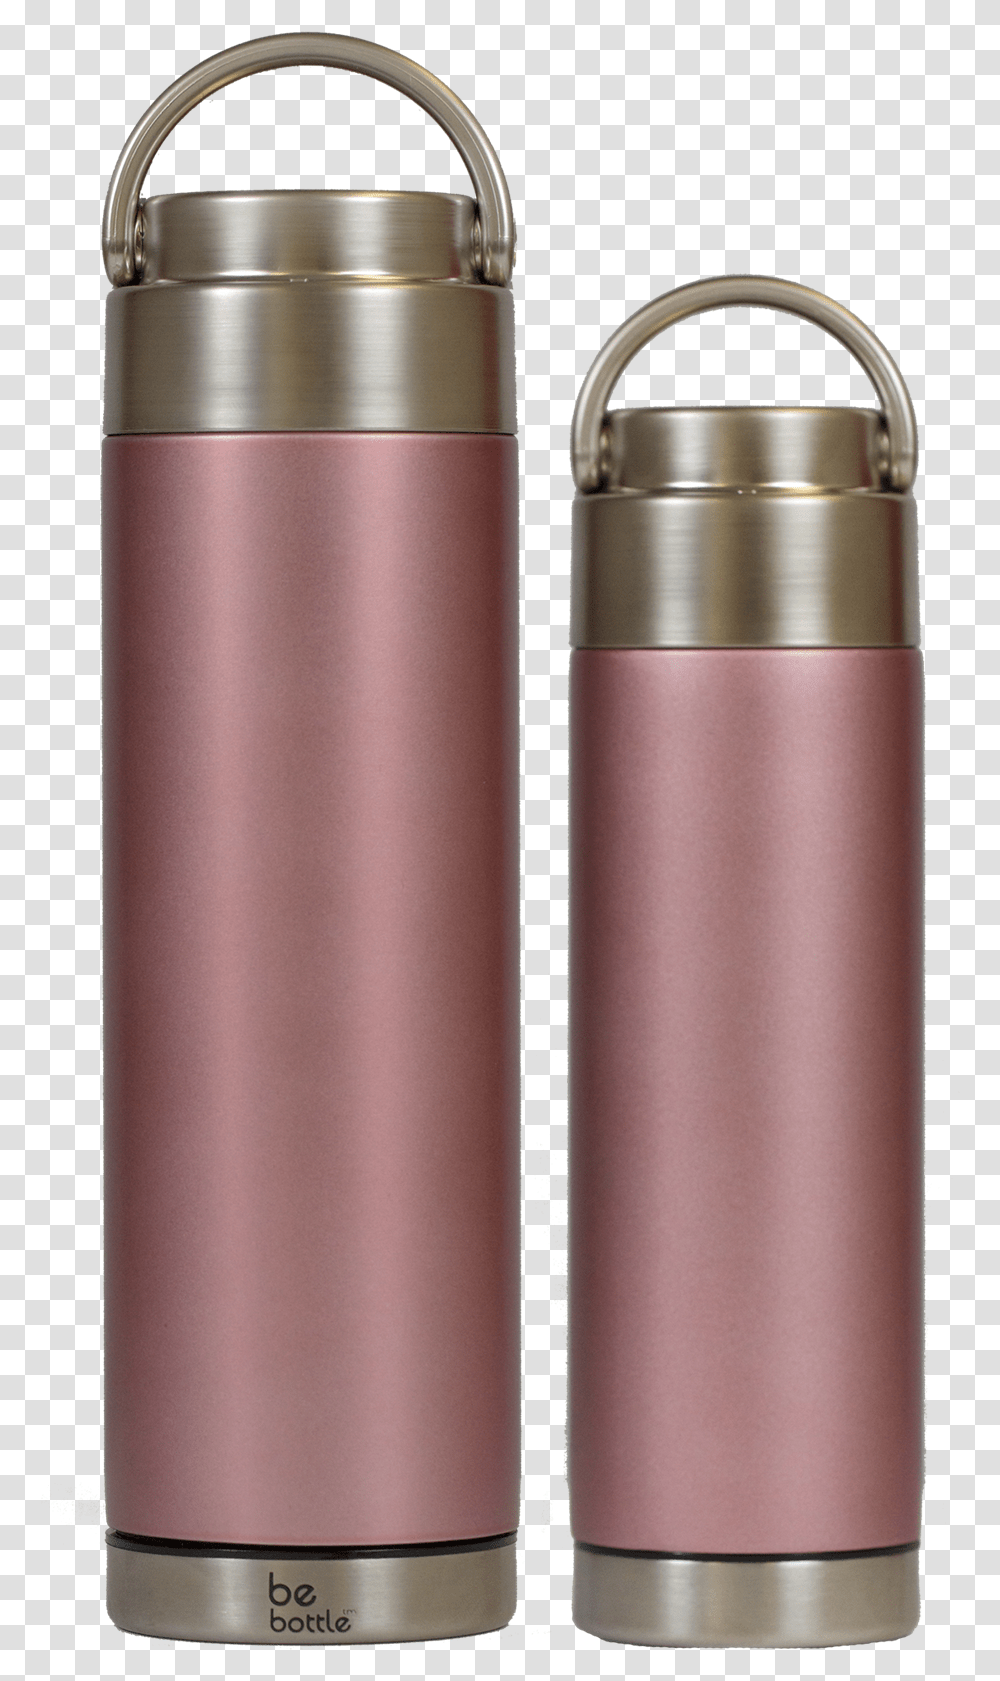 Gold Bottles Water Bottle, Shaker, Cylinder, Home Decor Transparent Png